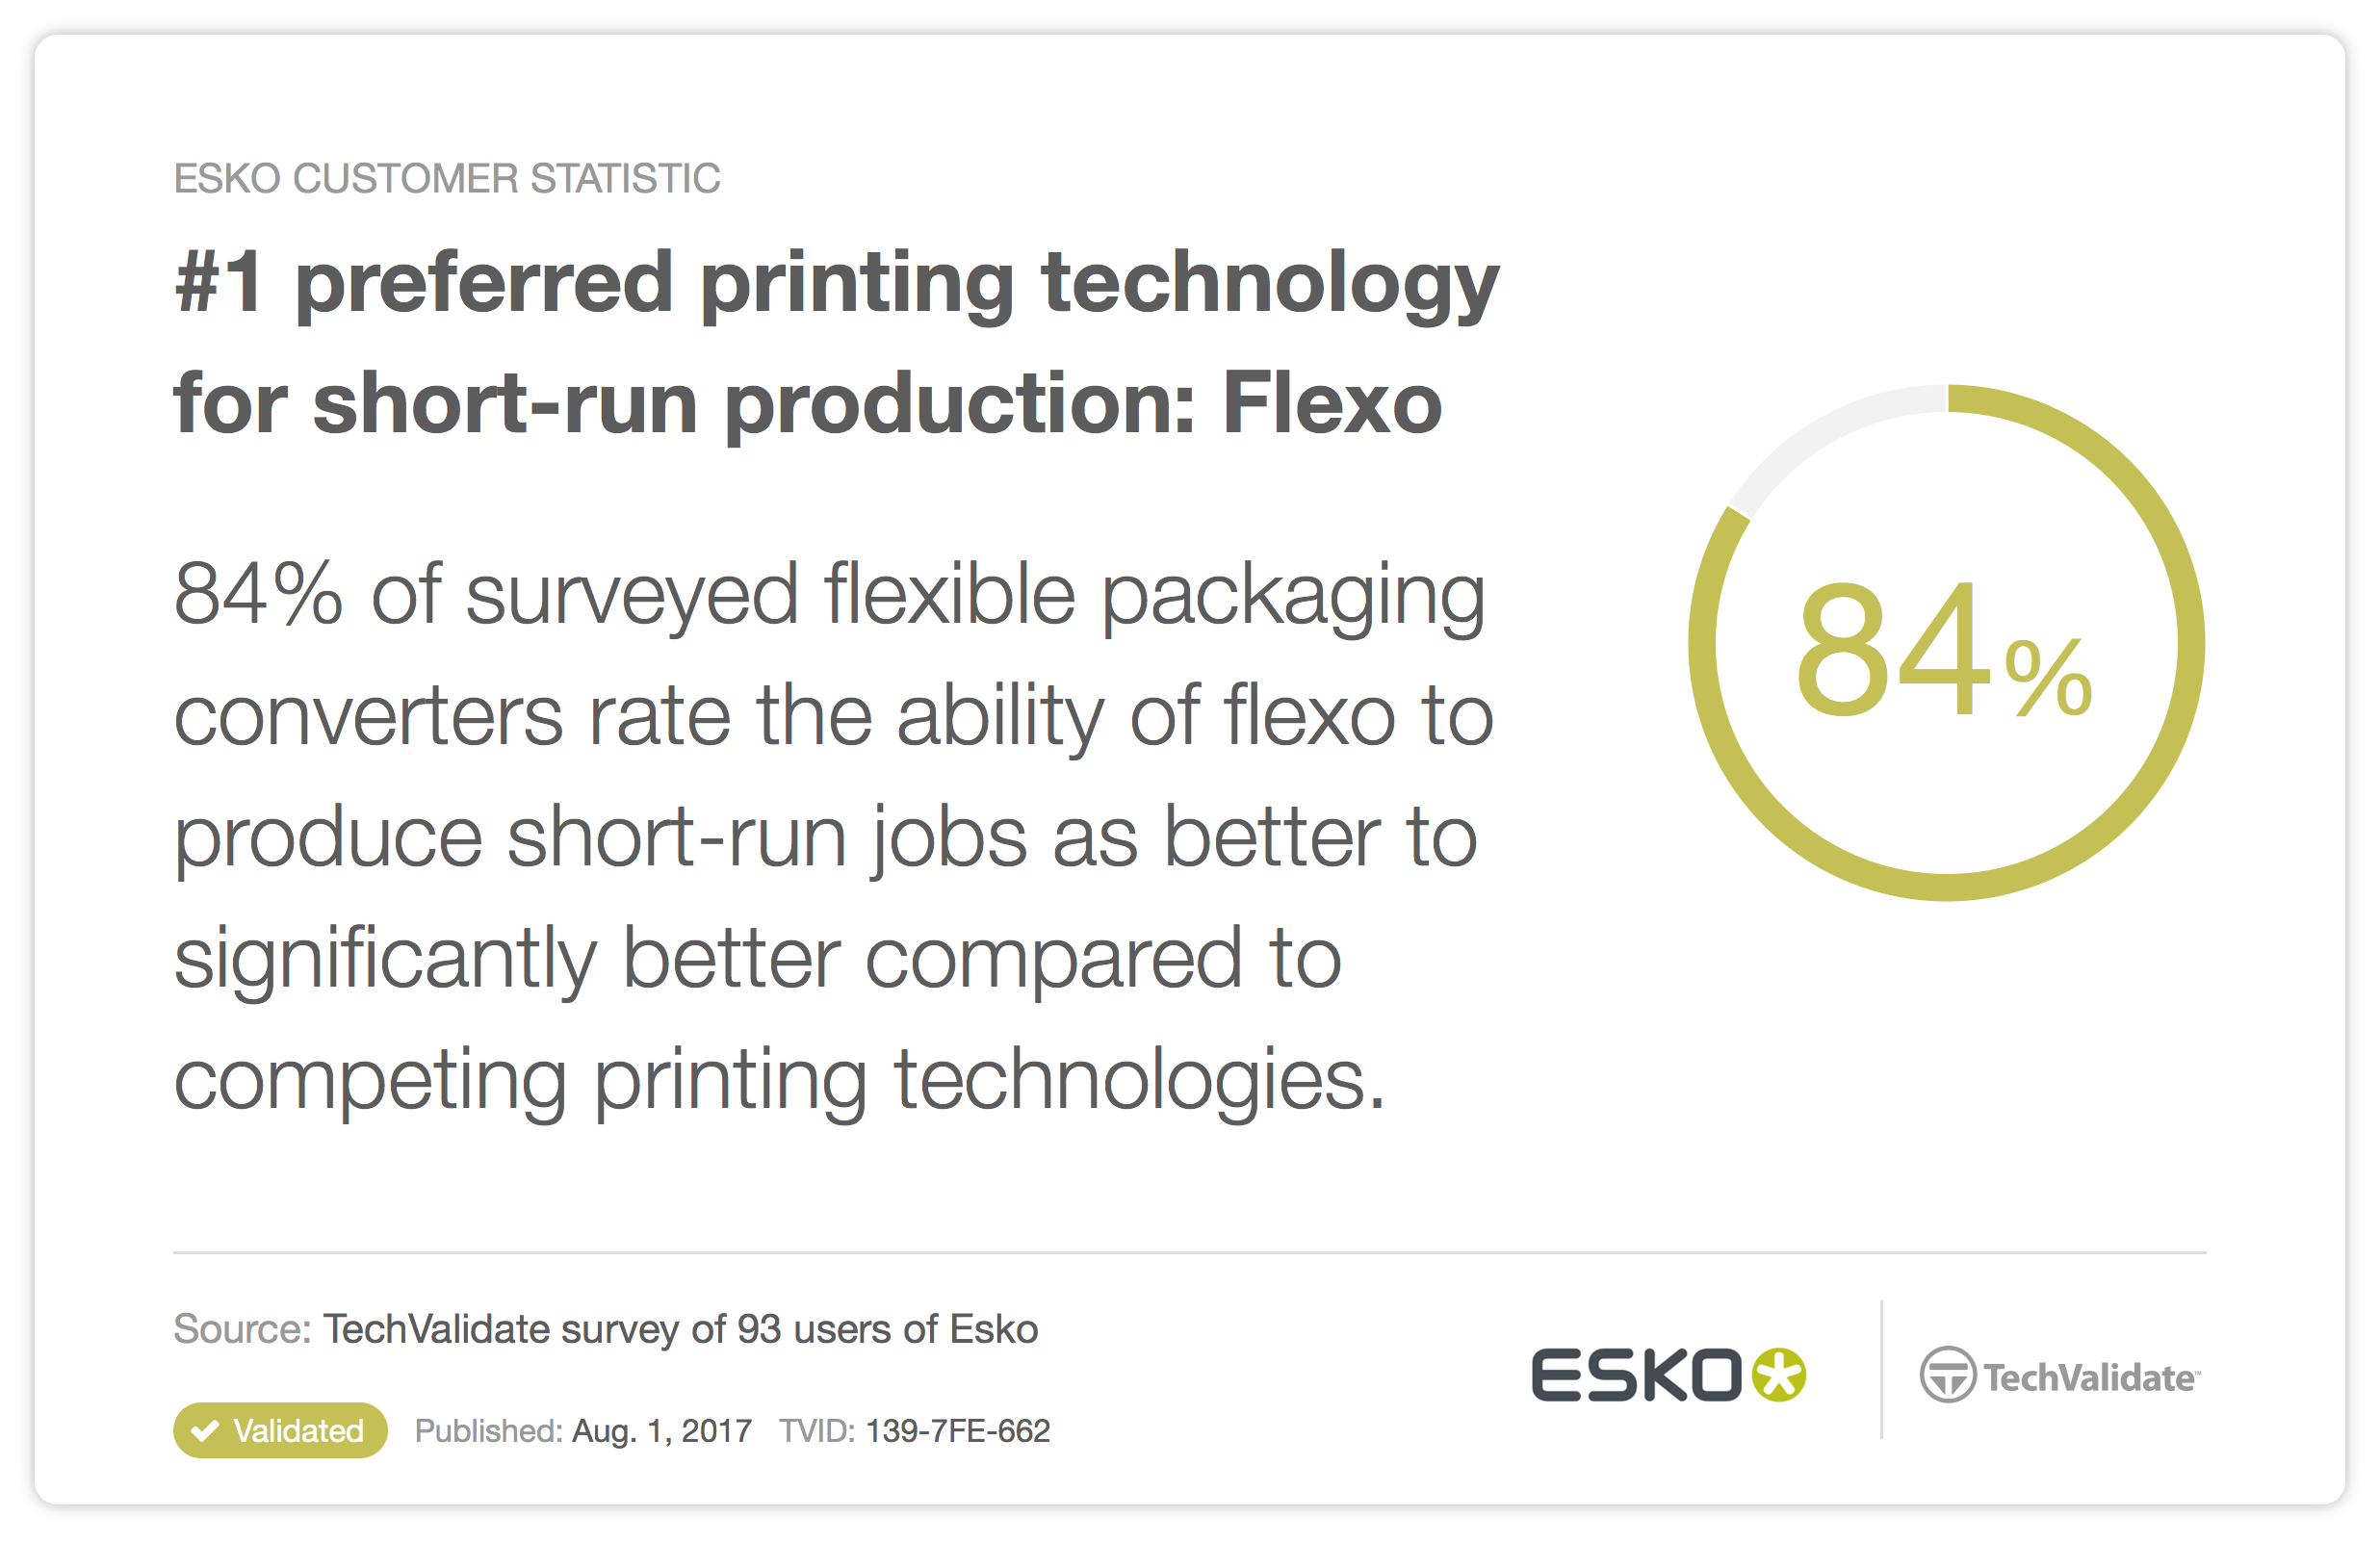 Die Nummer Eins unter den bevorzugten Drucktechnologien für Kleinauflagen: Flexo